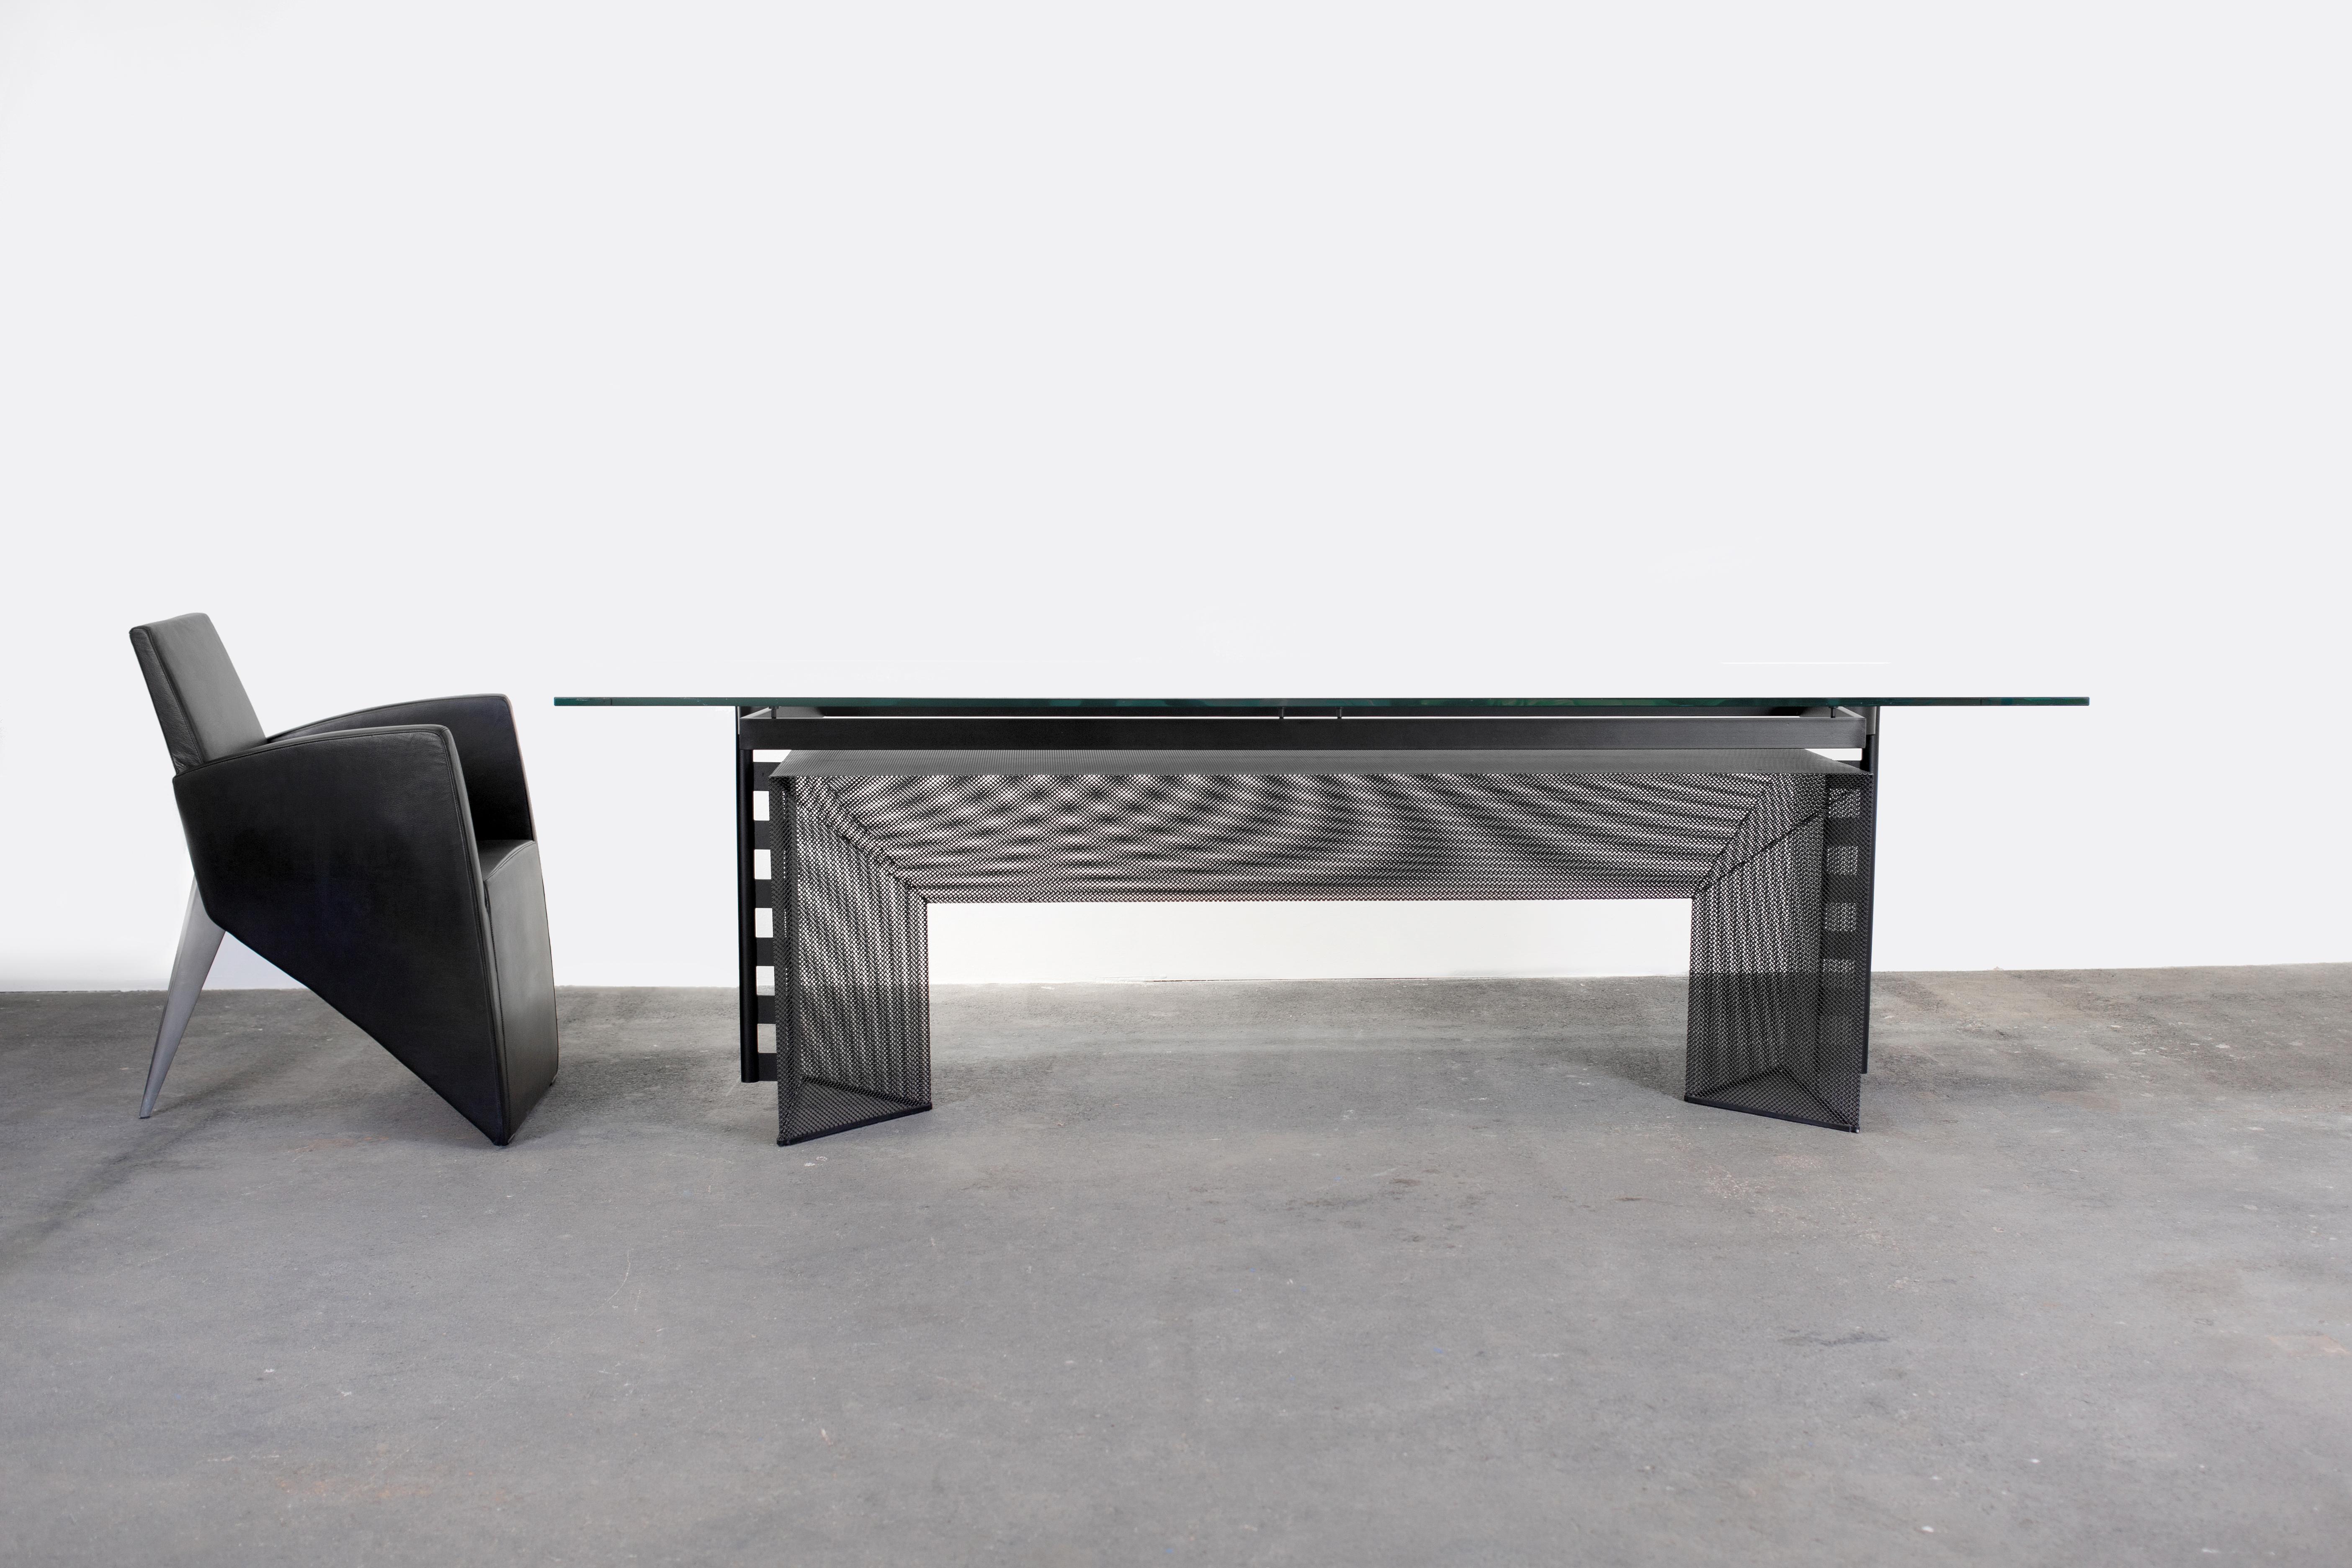 L'architecte suisse Mario Botta a conçu une table à manger ou une table de conférence postmoderne en verre et métal prismatique. 

Conçu en 1986 et fabriqué par Alias dans le nord de l'Italie.

De grandes plaques de verre semblent planer